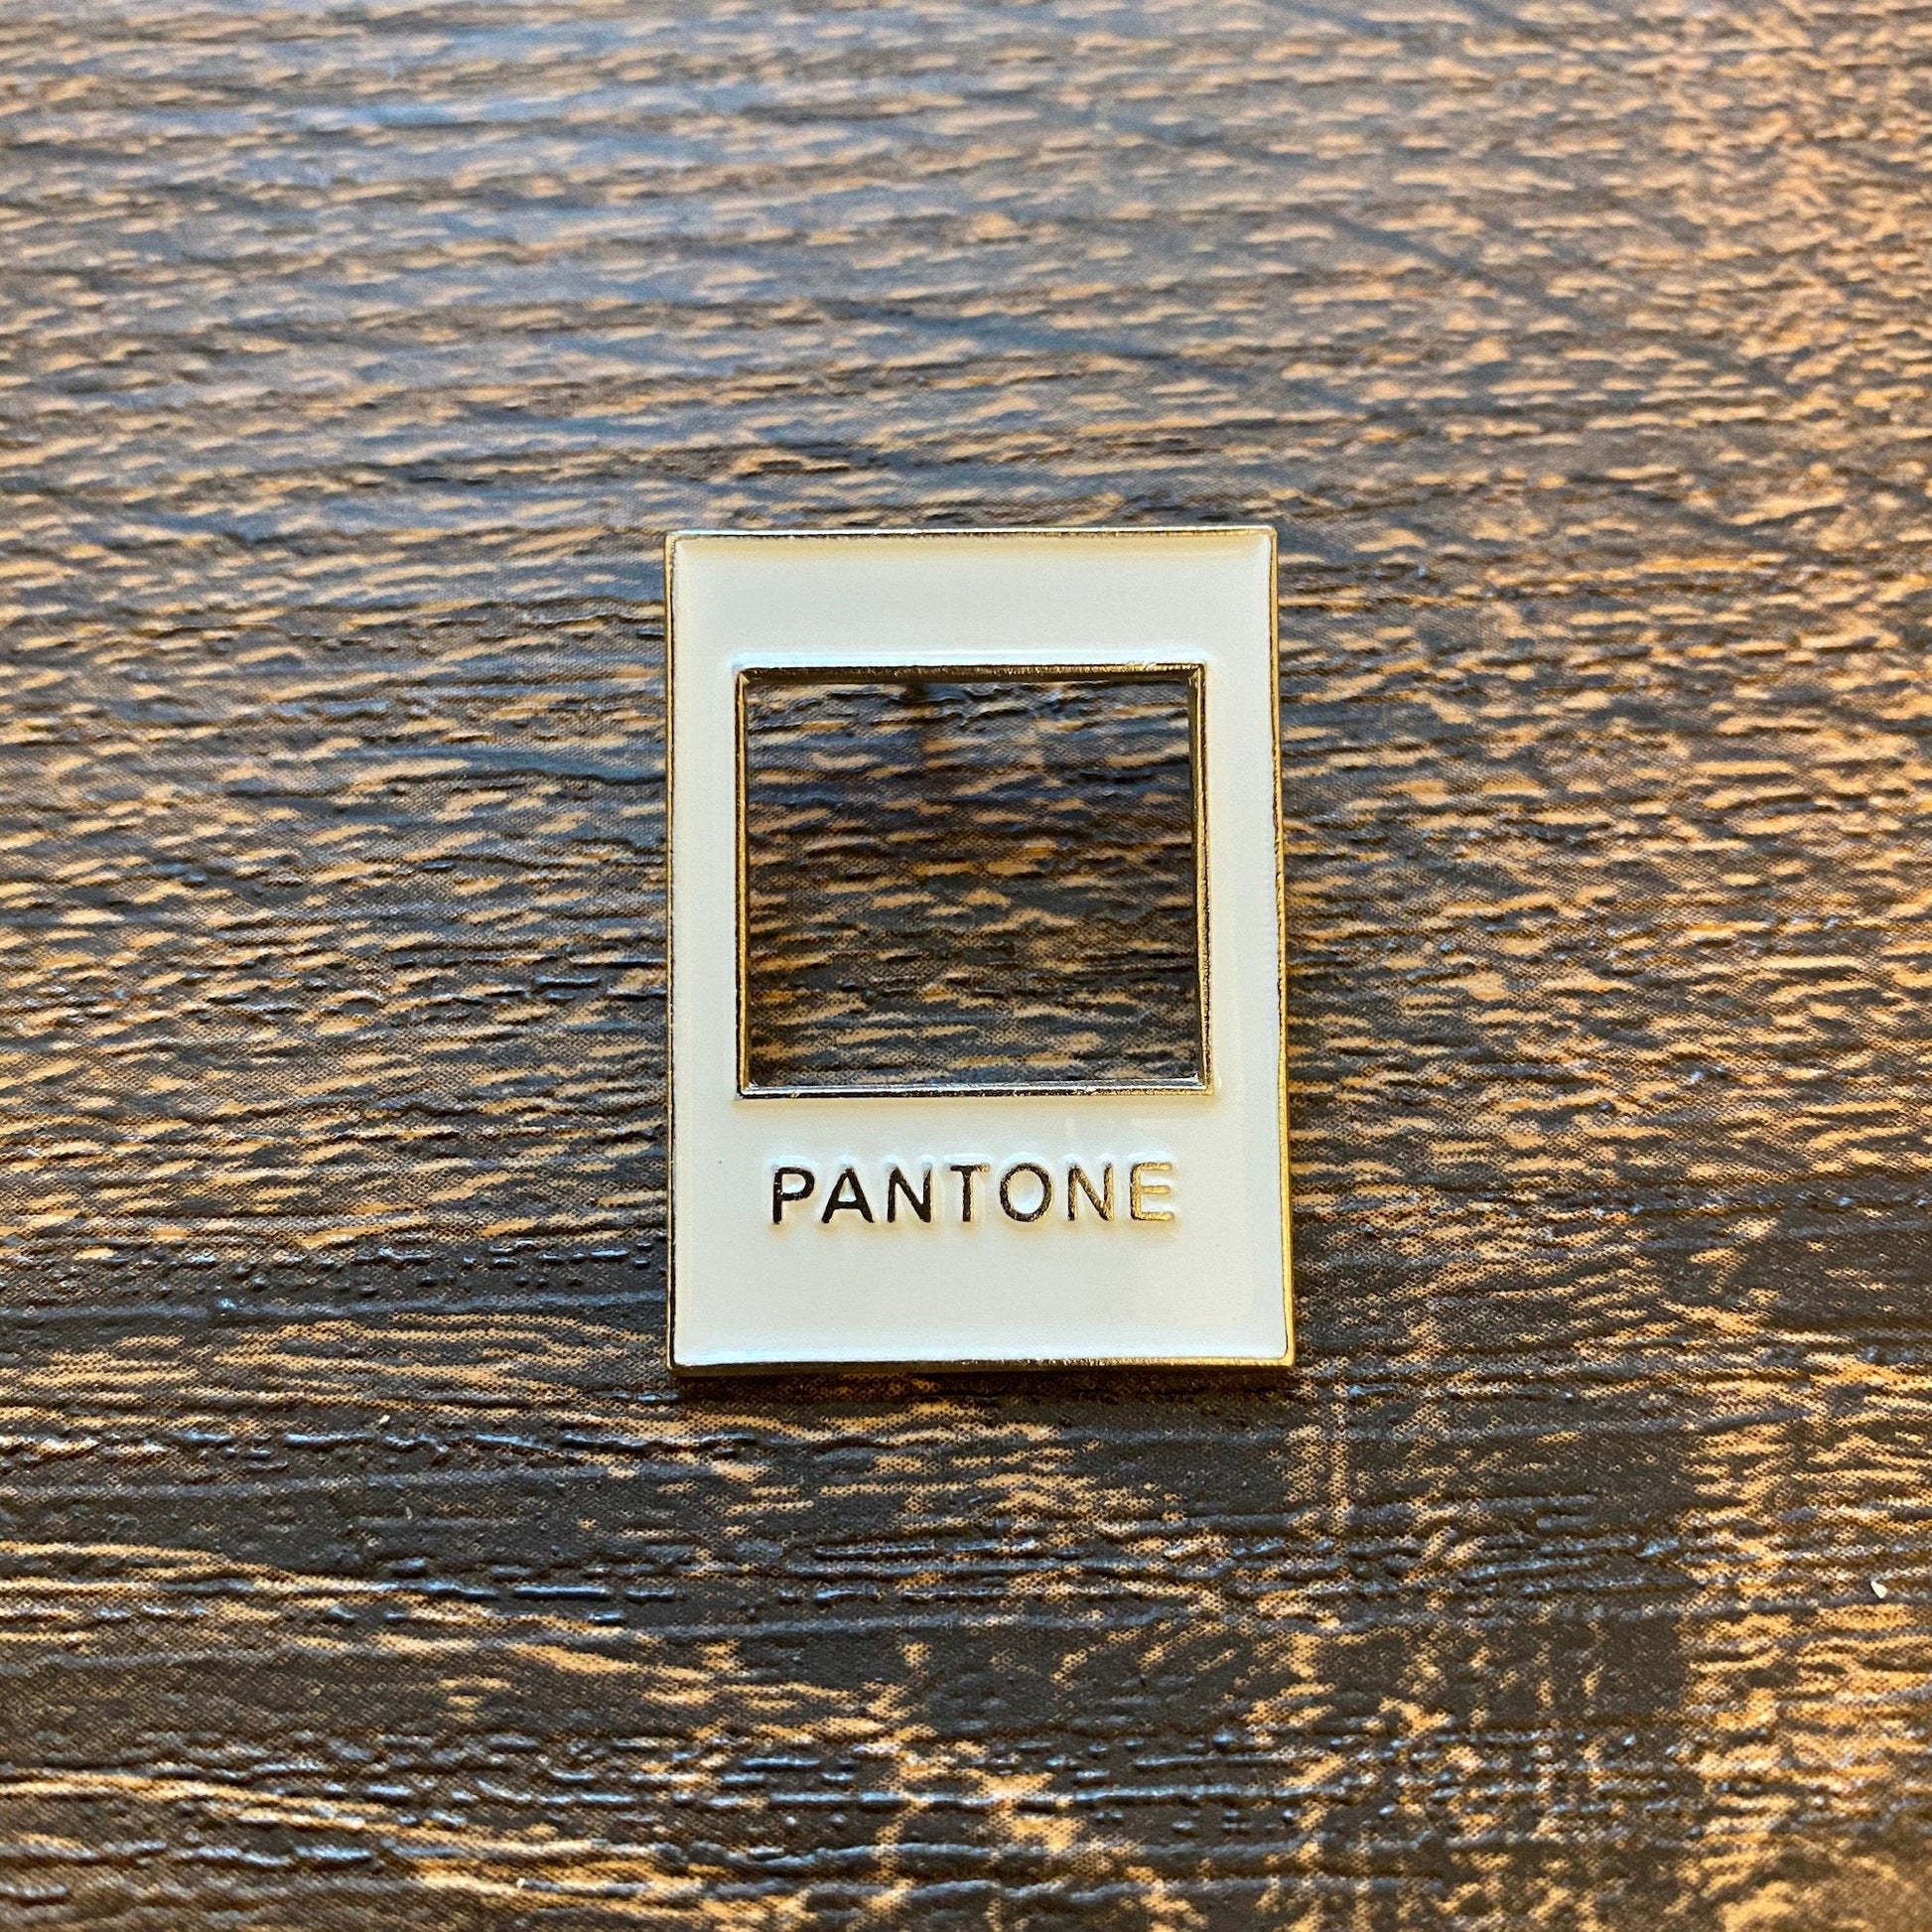 Pantone Picker Cool Colors Enamel Pin - thehappypin